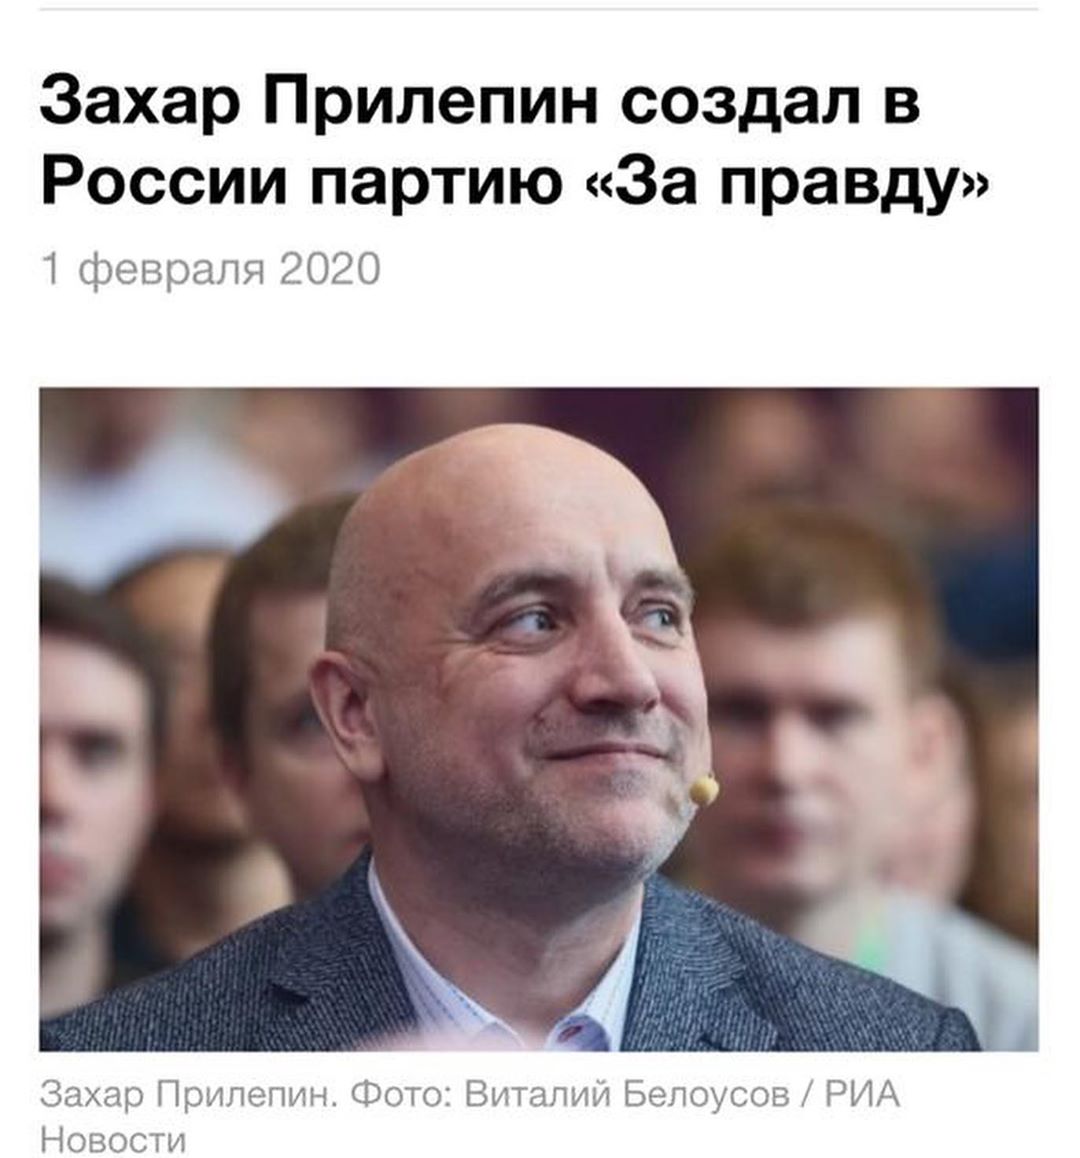 Сергей Шнуров высмеял партию Прилепина и Охлобыстина: «Пойдет на перегной»